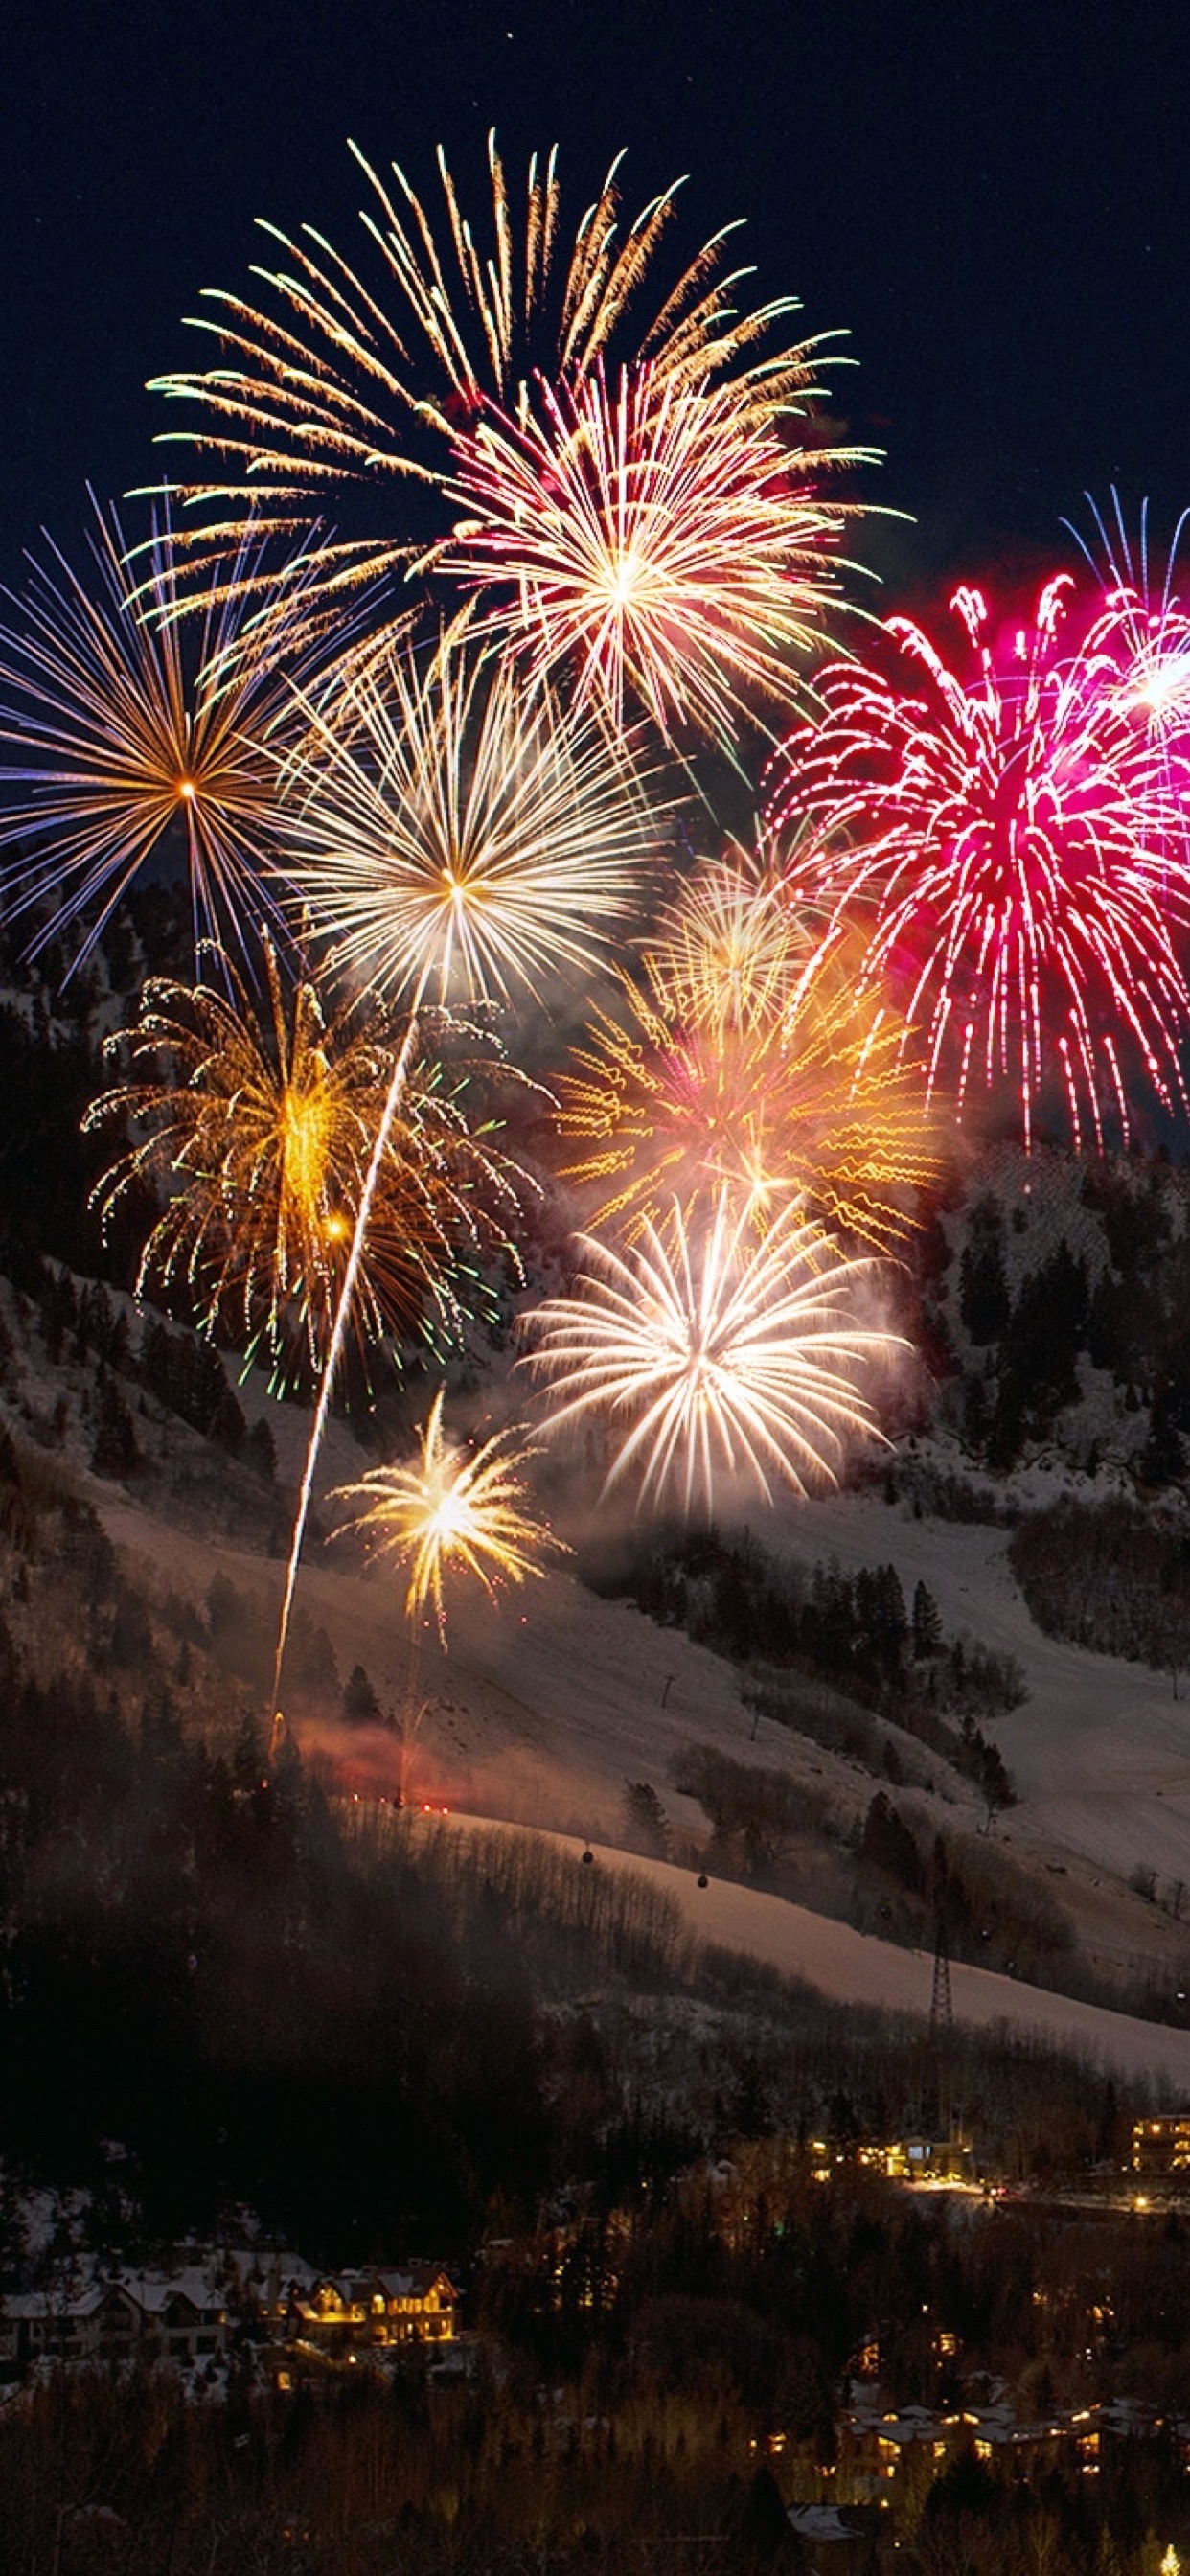 felice anno nuovo sfondo,fuochi d'artificio,natura,cielo,fotografia,capodanno